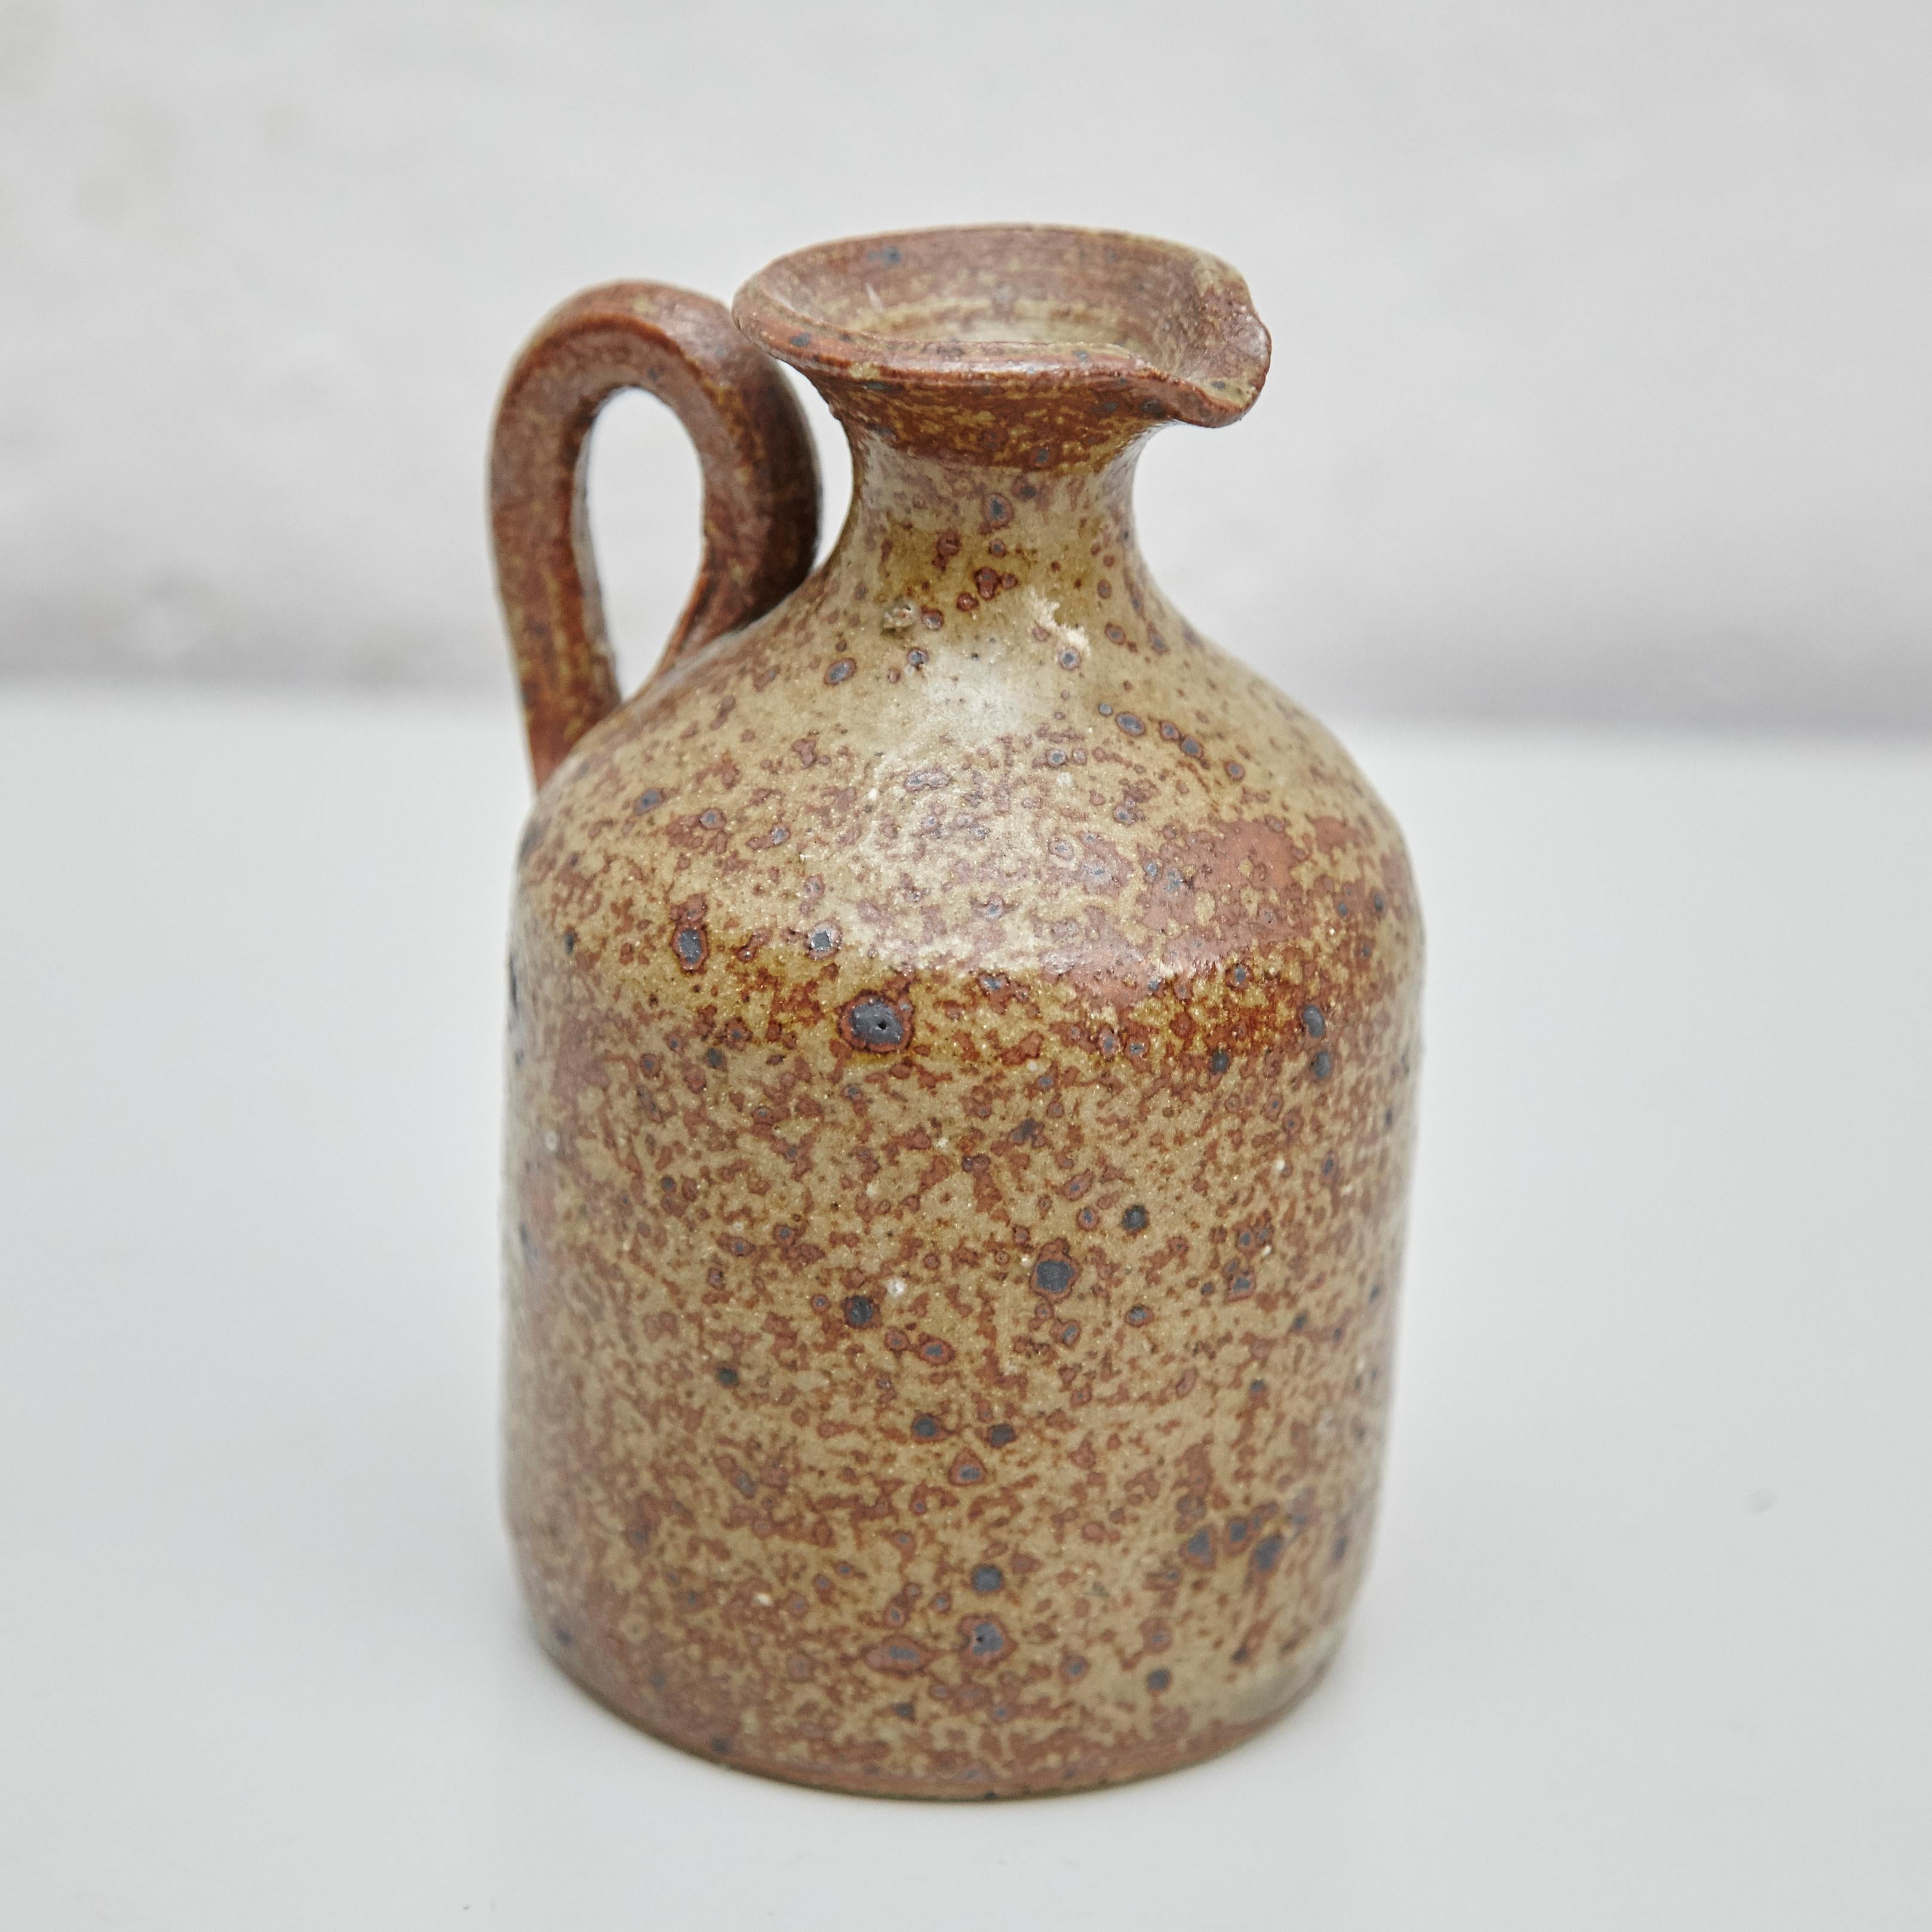 Traditional Rustic Spanish Ceramic 4